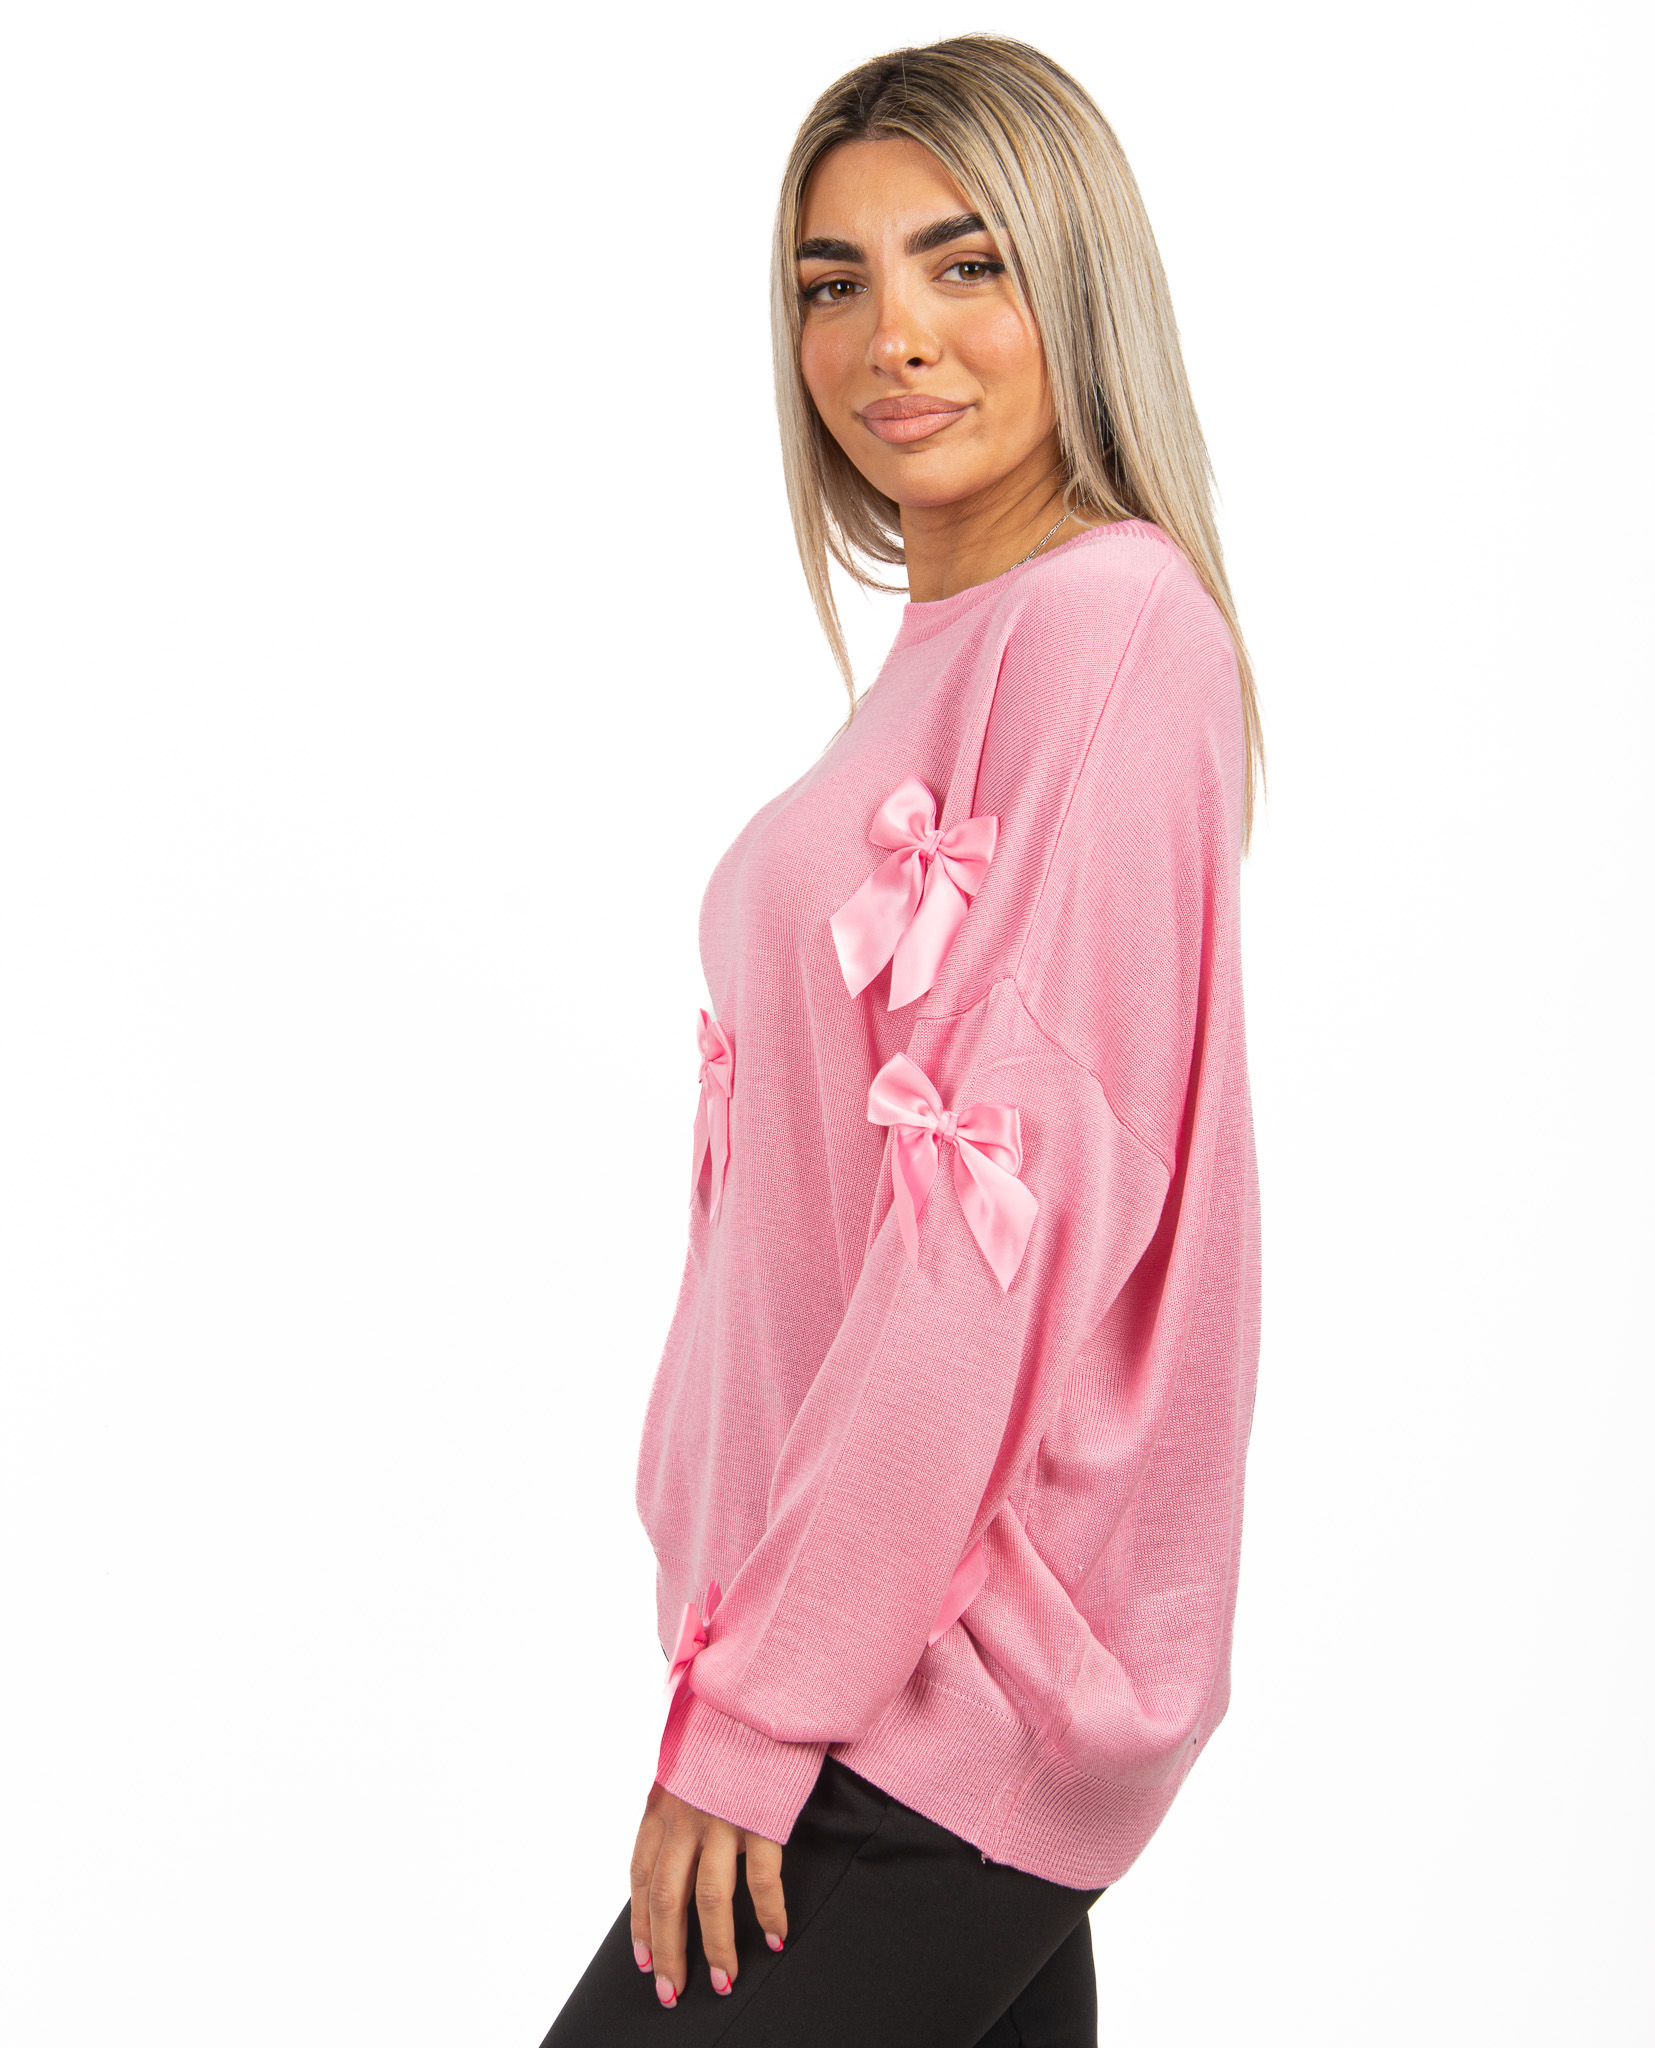 Μπλούζα με Φιόγκους Ροζ | EllenBoutique